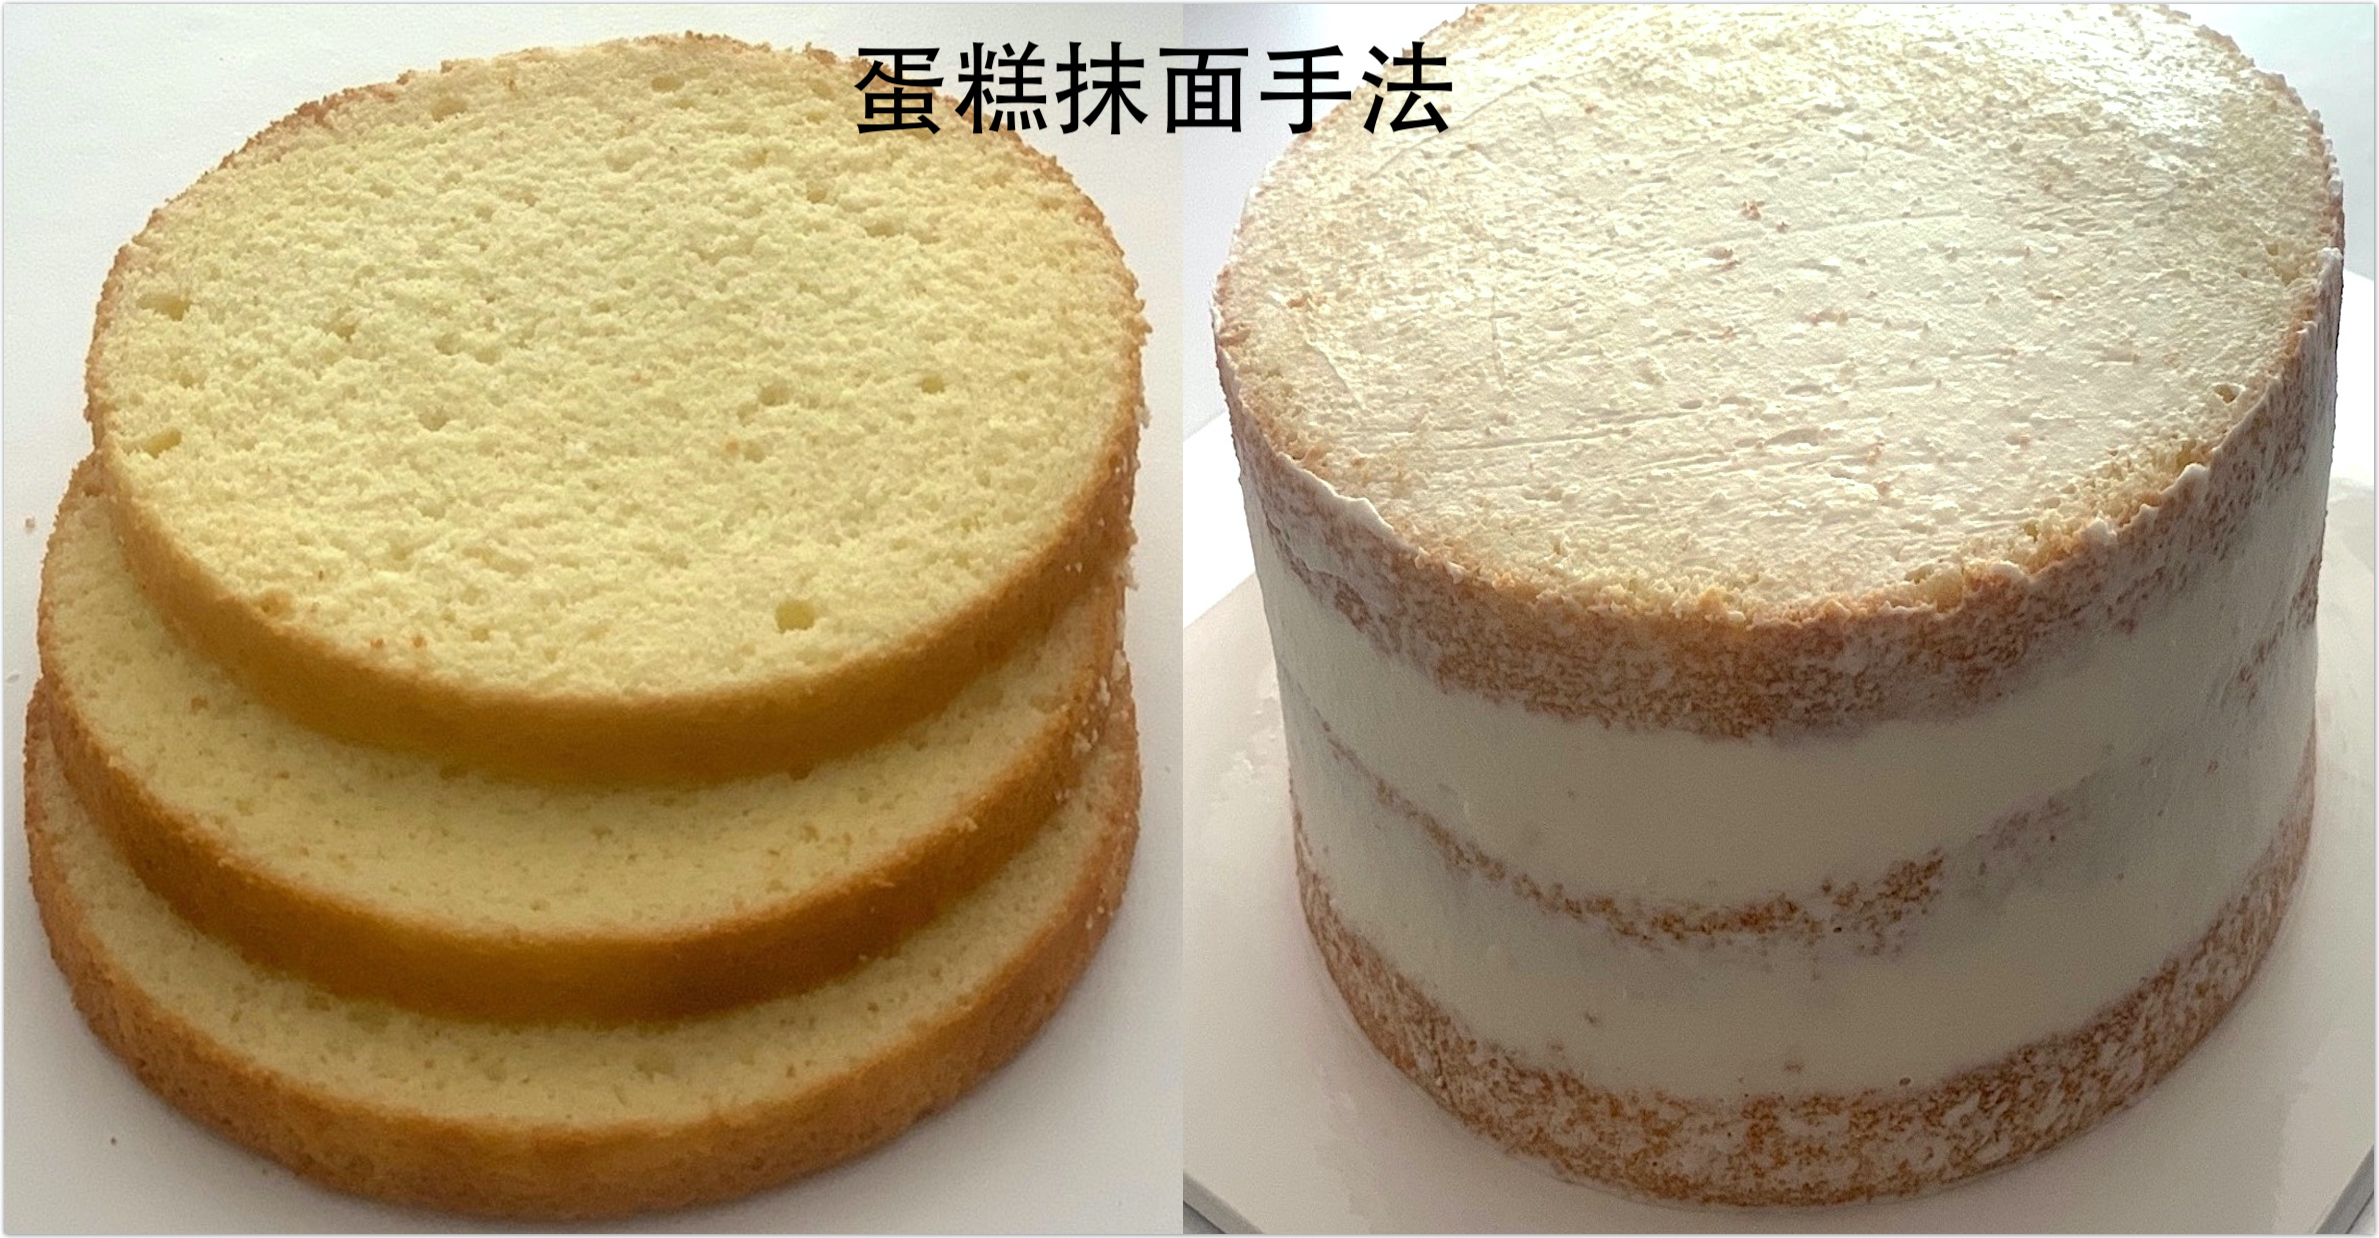 池恩惠|蛋糕抹面三等分黄金比例操作手法的做法